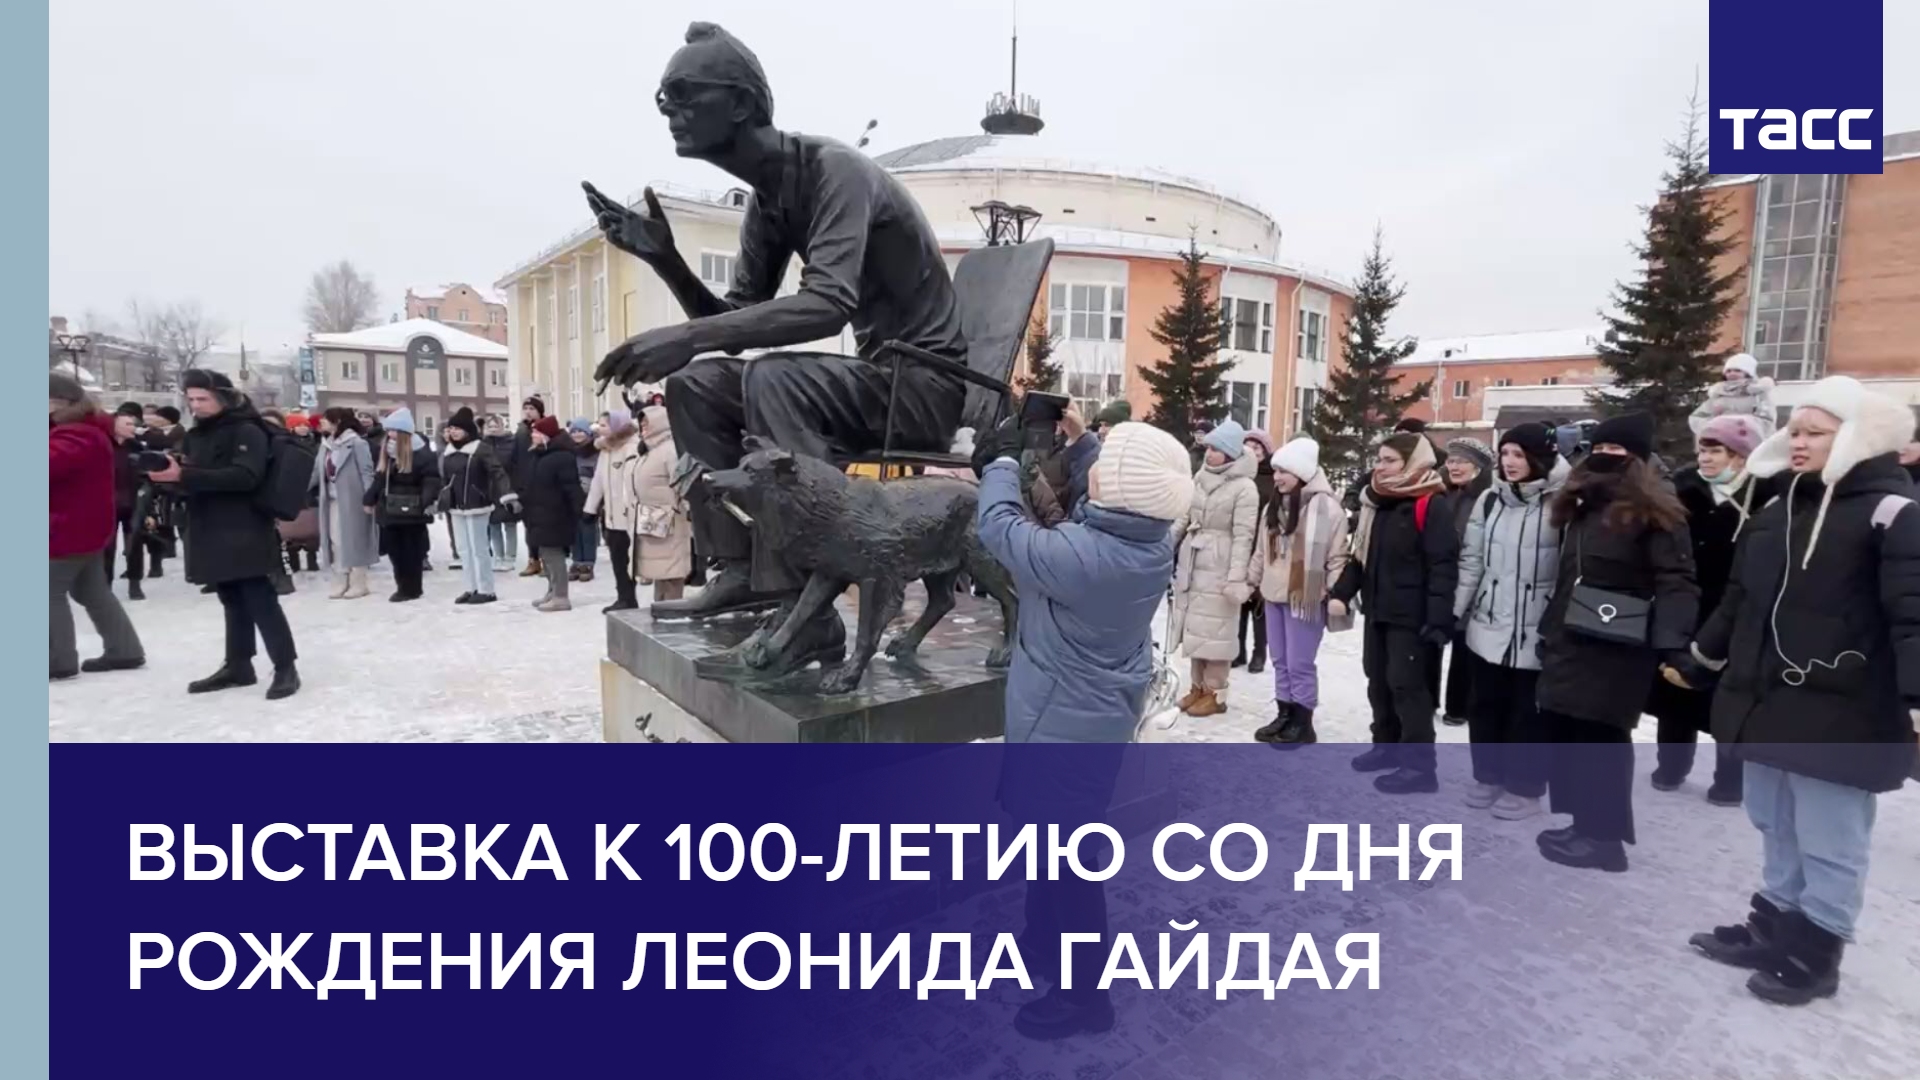 Выставка к 100-летию со дня рождения Леонида Гайдая